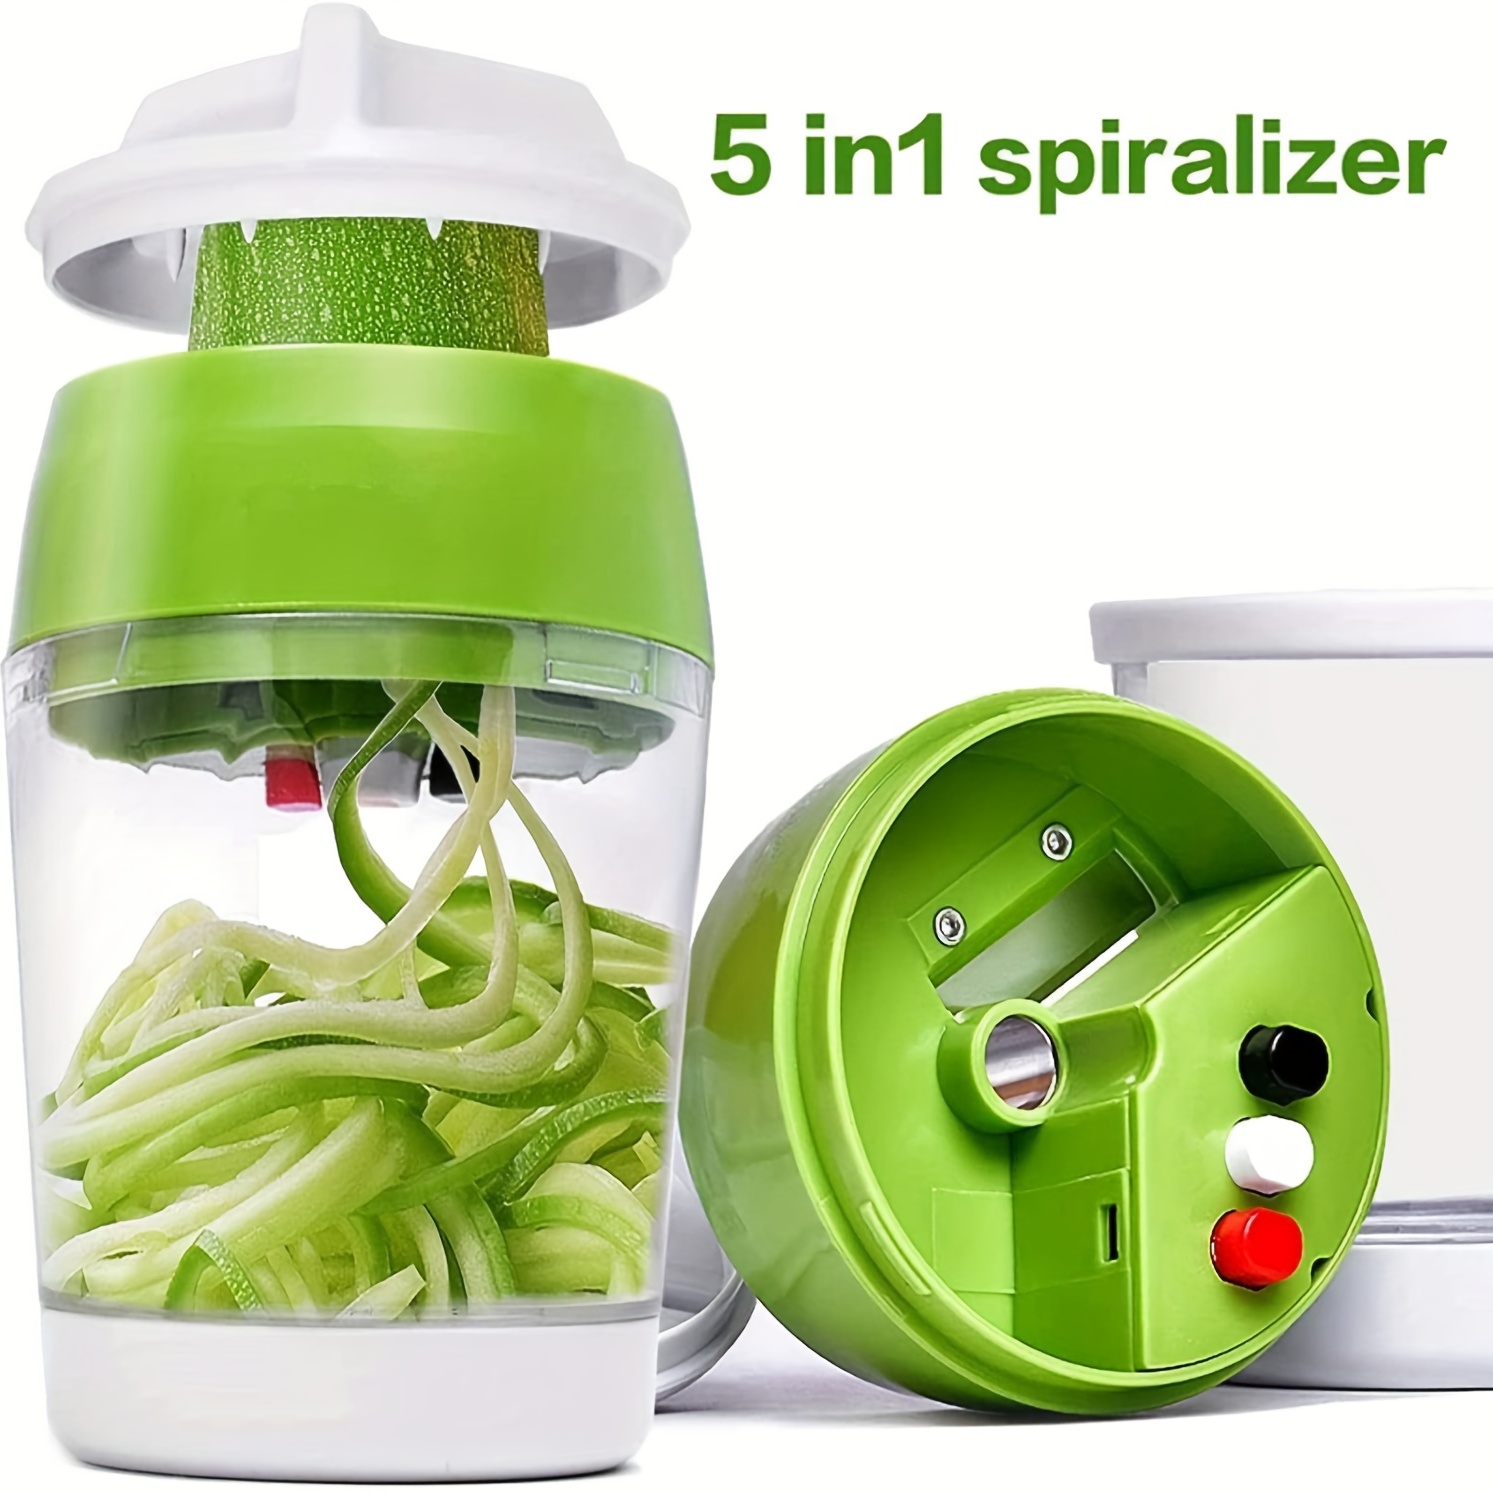 4in1 Vegetable Chopper, Spiralizer Vegetable Slicer, Onion Chopper